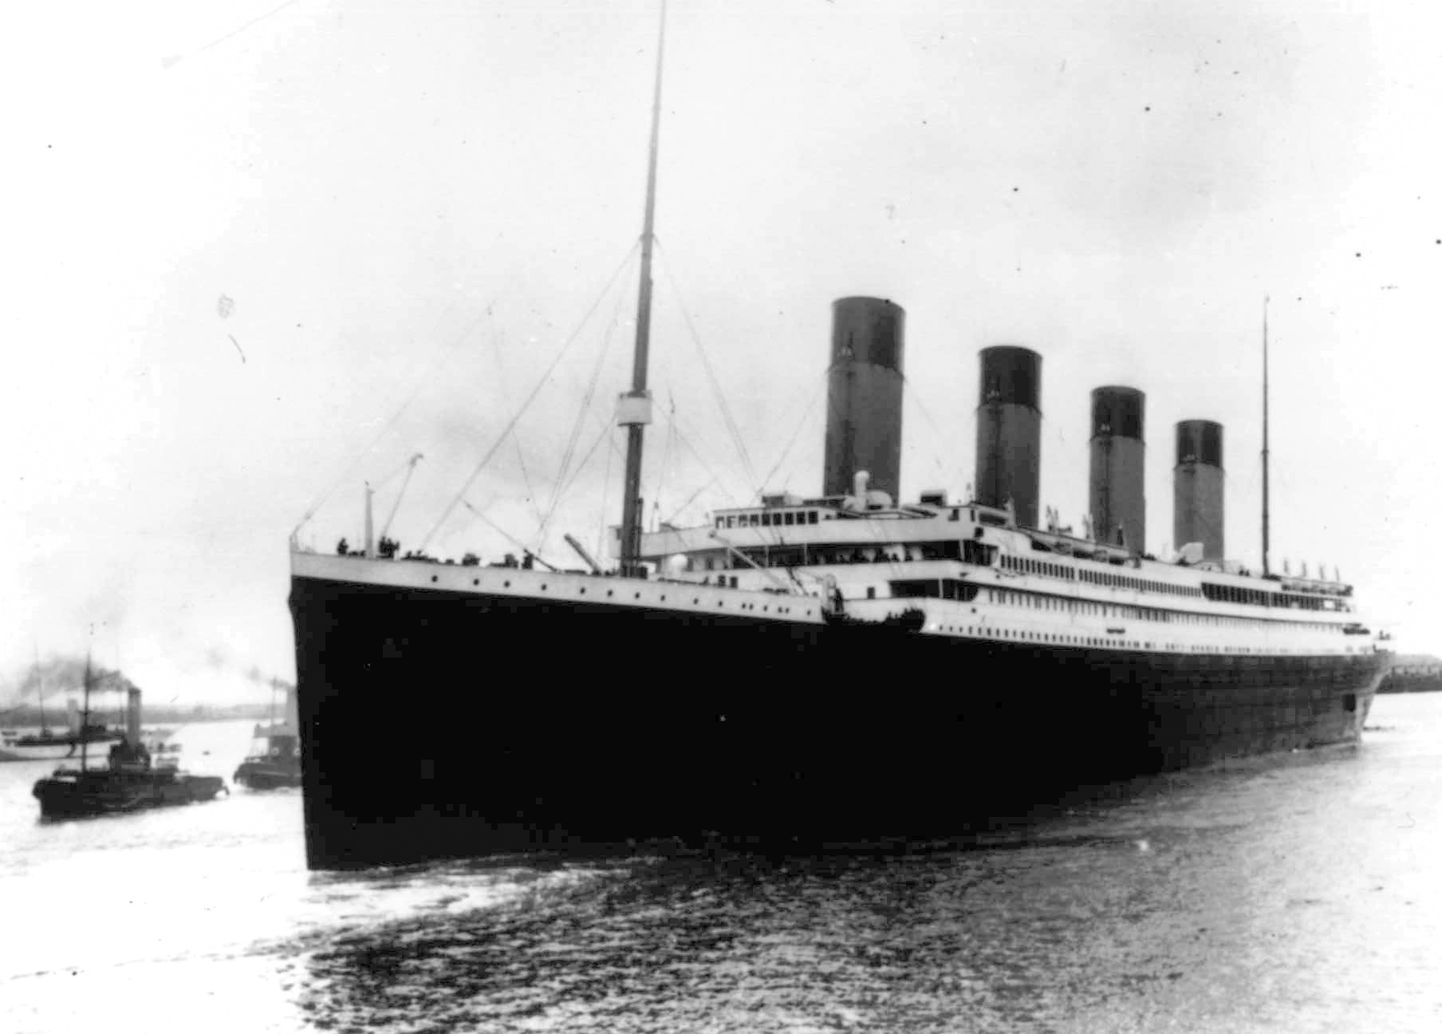 Titanic lahkumas 10. aprillil 1912 Suurbritanniast Southamptonist esmareisile. Titanic põrkas 14. aprillil 1912 jäämäega kokku ja uppus 15. aprillil 1912